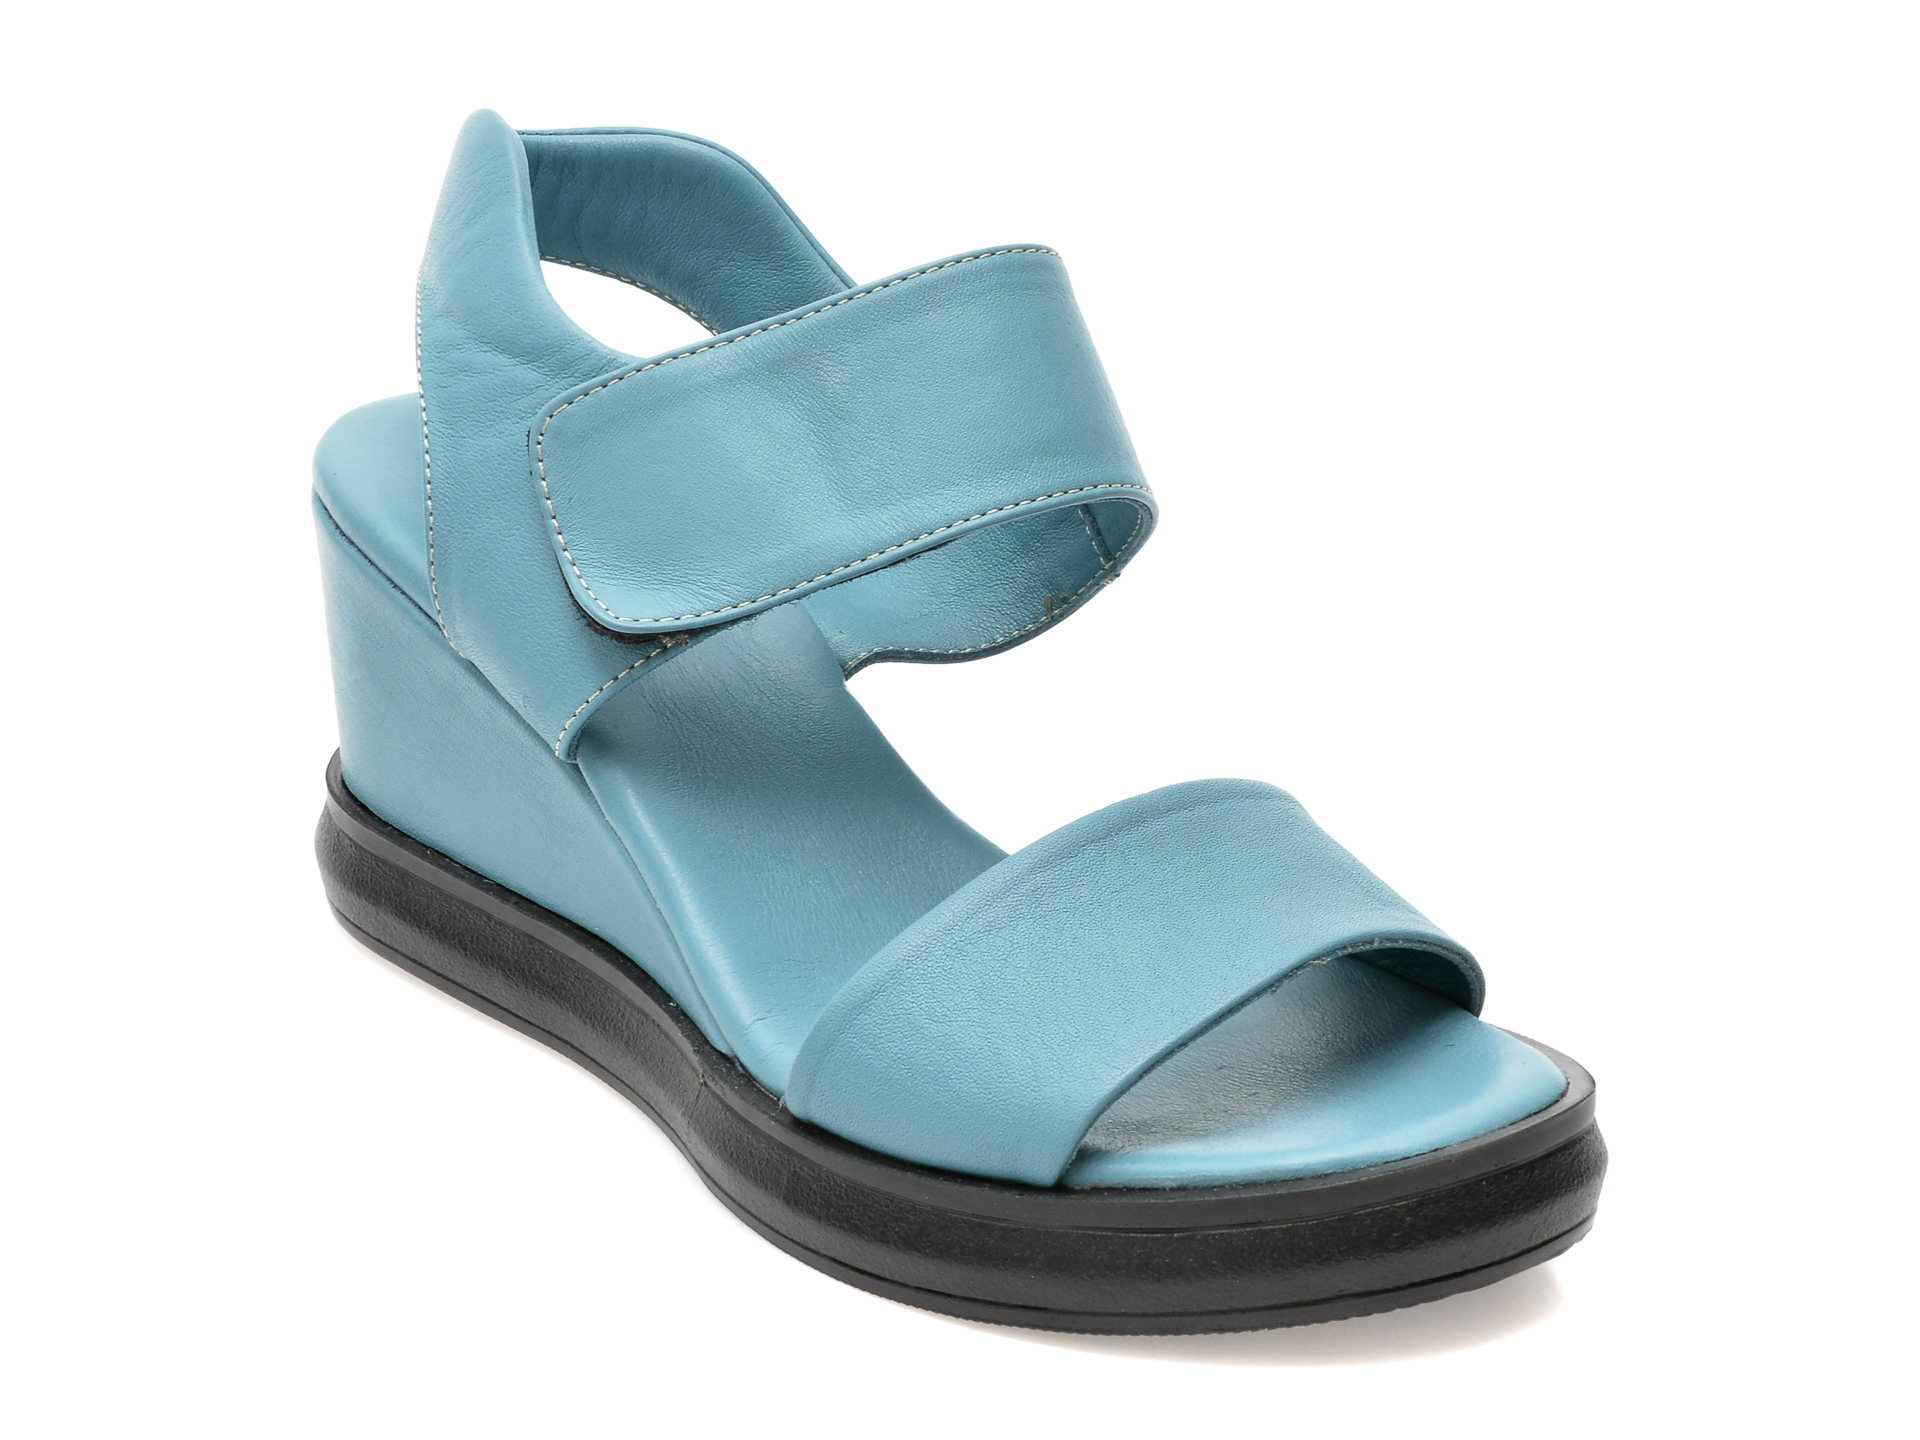 Sandale EBOUV albastre, 30021, din piele naturala